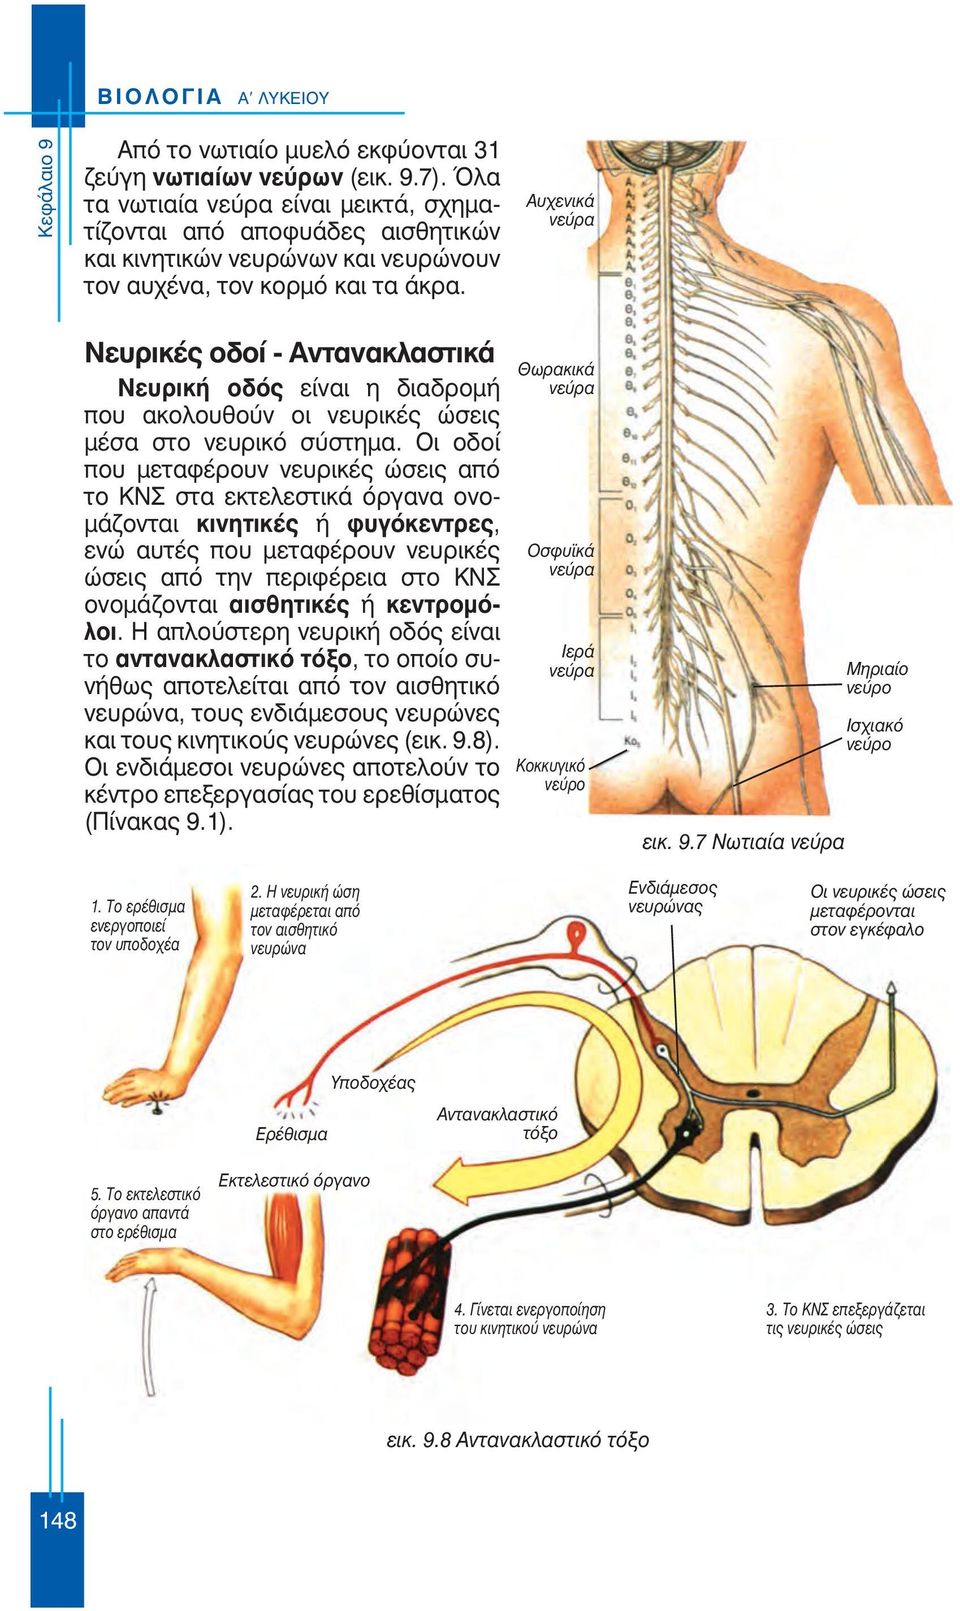 Αυχενικά νεύρα Νευρικές οδοί - Αντανακλαστικά Νευρική οδός είναι η διαδρομή που ακολουθούν οι νευρικές ώσεις μέσα στο νευρικό σύστημα.